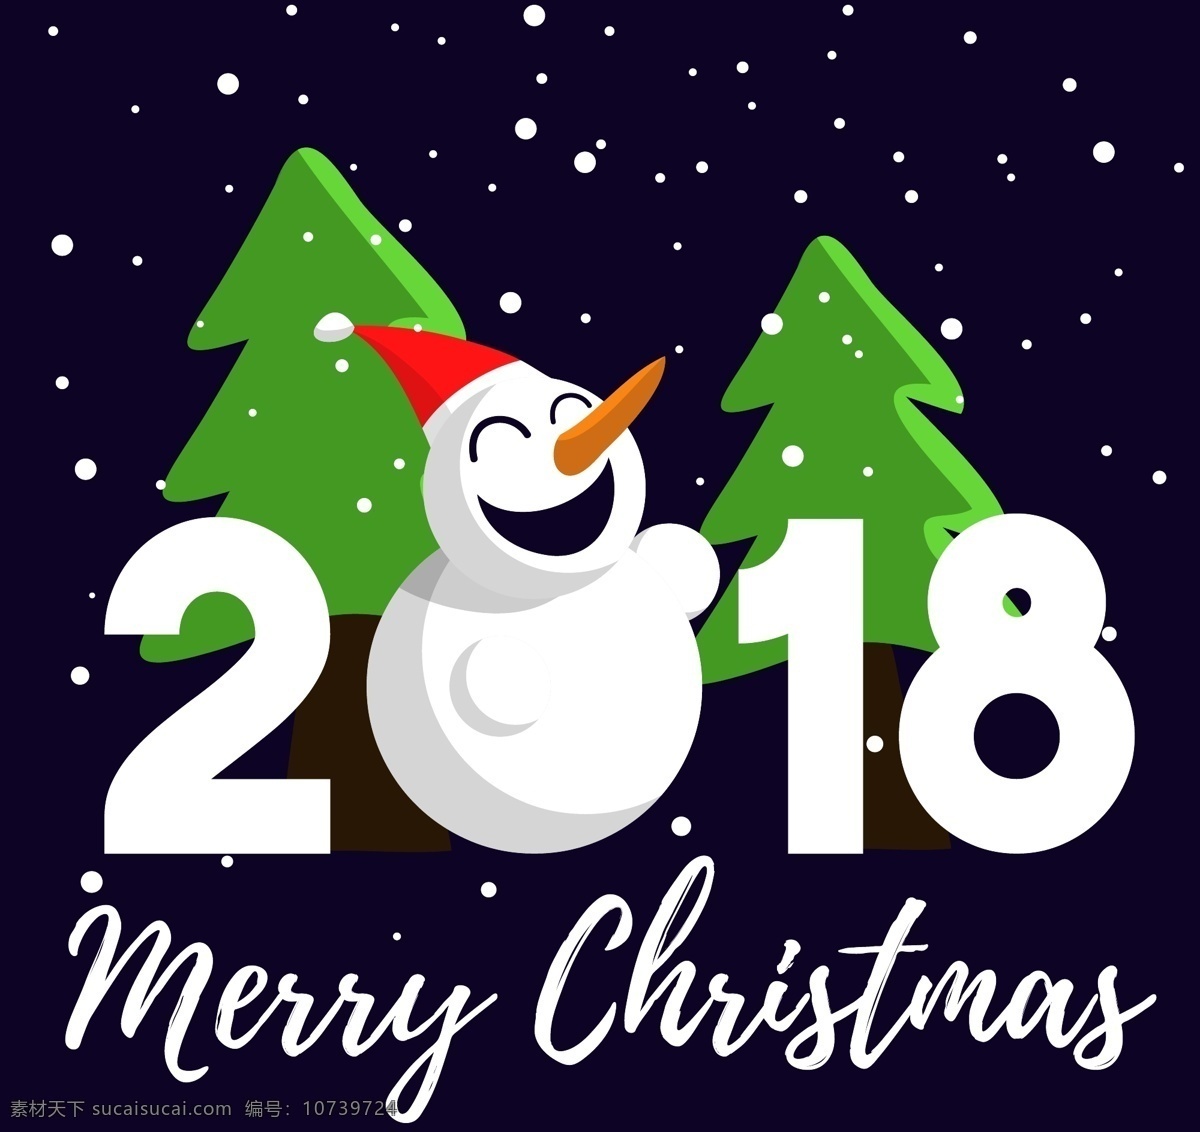 新年 创意 新年海报 海报 矢量素材 高档海报 2018年 新年素材 唯美背景 雪人 圣诞树 圣诞